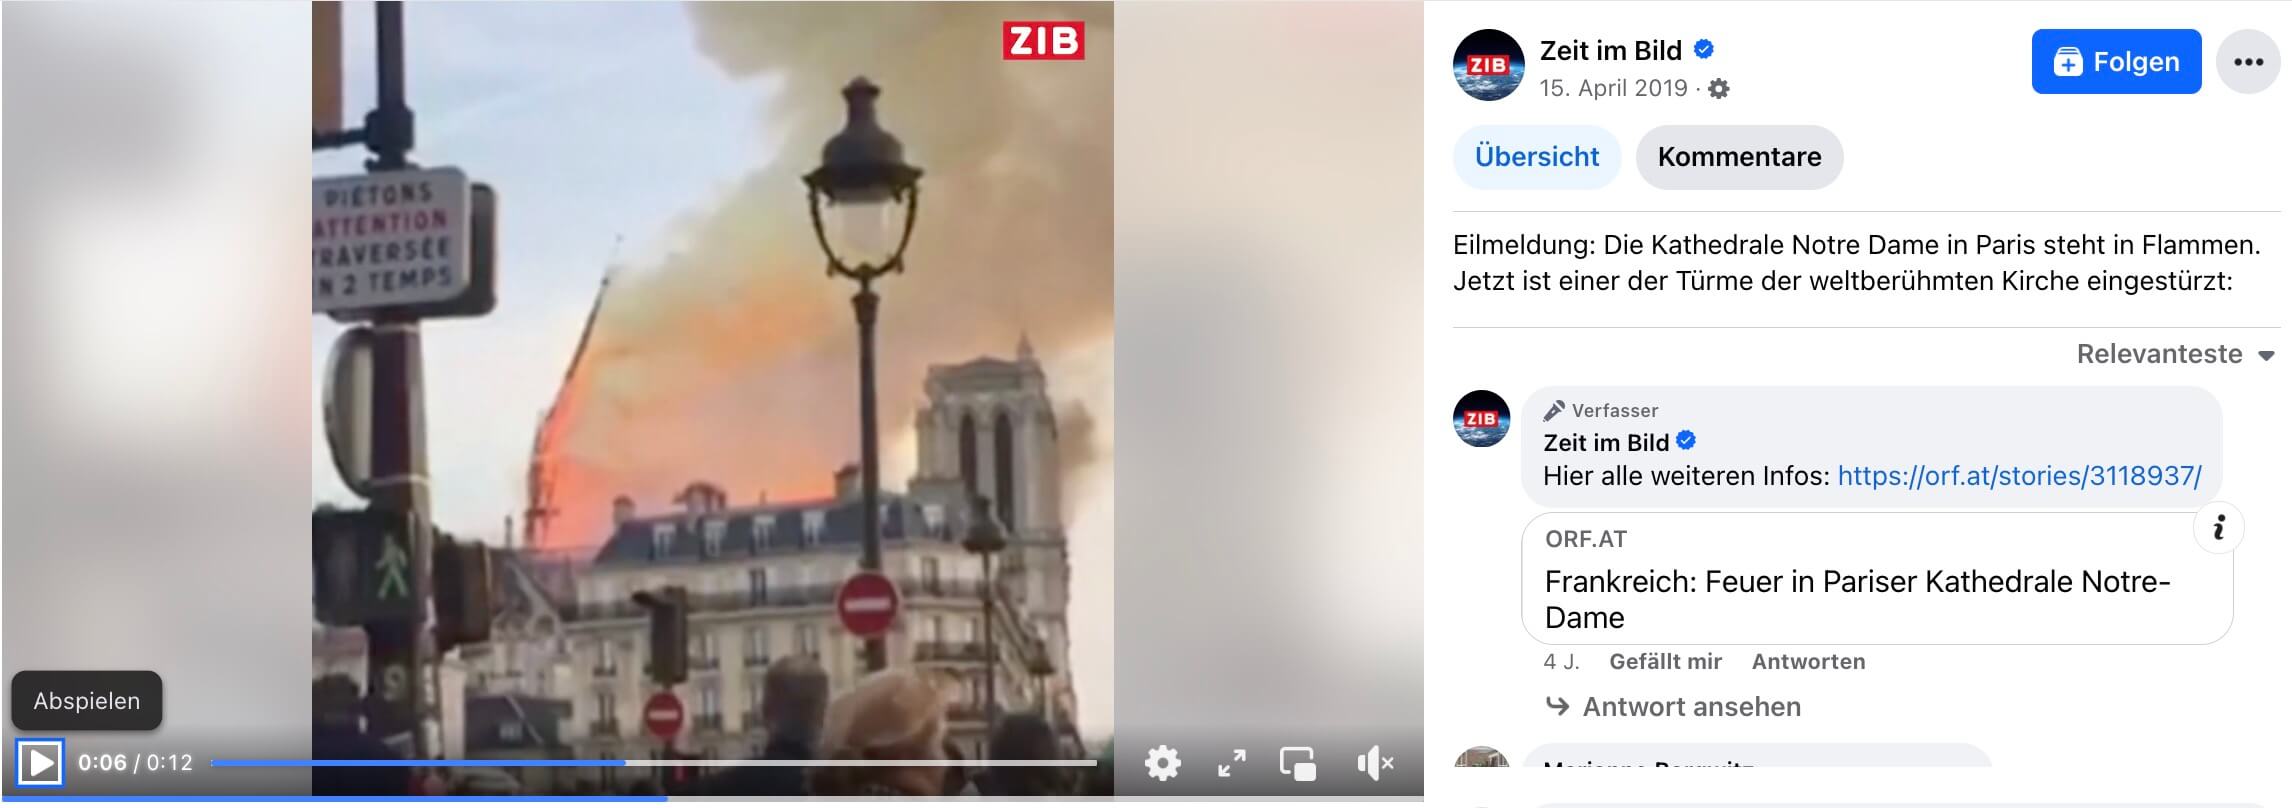 2019: Einn Turm von Notre-Dame in Paris stürzt ein – es ist nicht der Eiffelturm